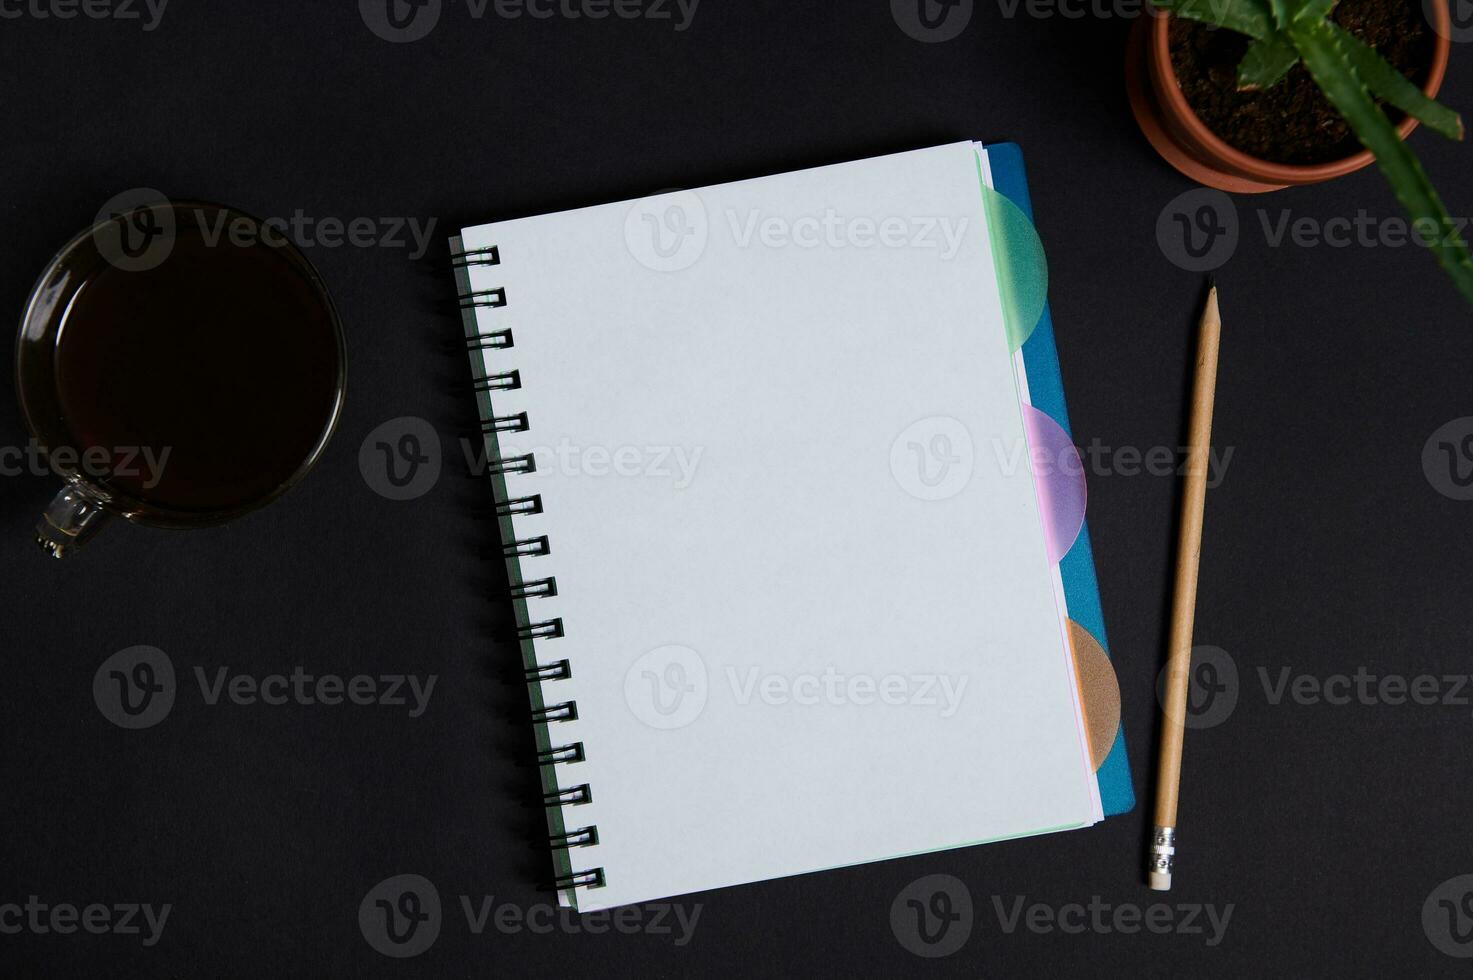 en inlagd saftig i lera pott, kopp av kaffe och trä- penna liggande ner Nästa till en copybook, anteckningsblock, arrangör med vit tom ark med Plats för text, på svart tabell bakgrund. platt lägga foto